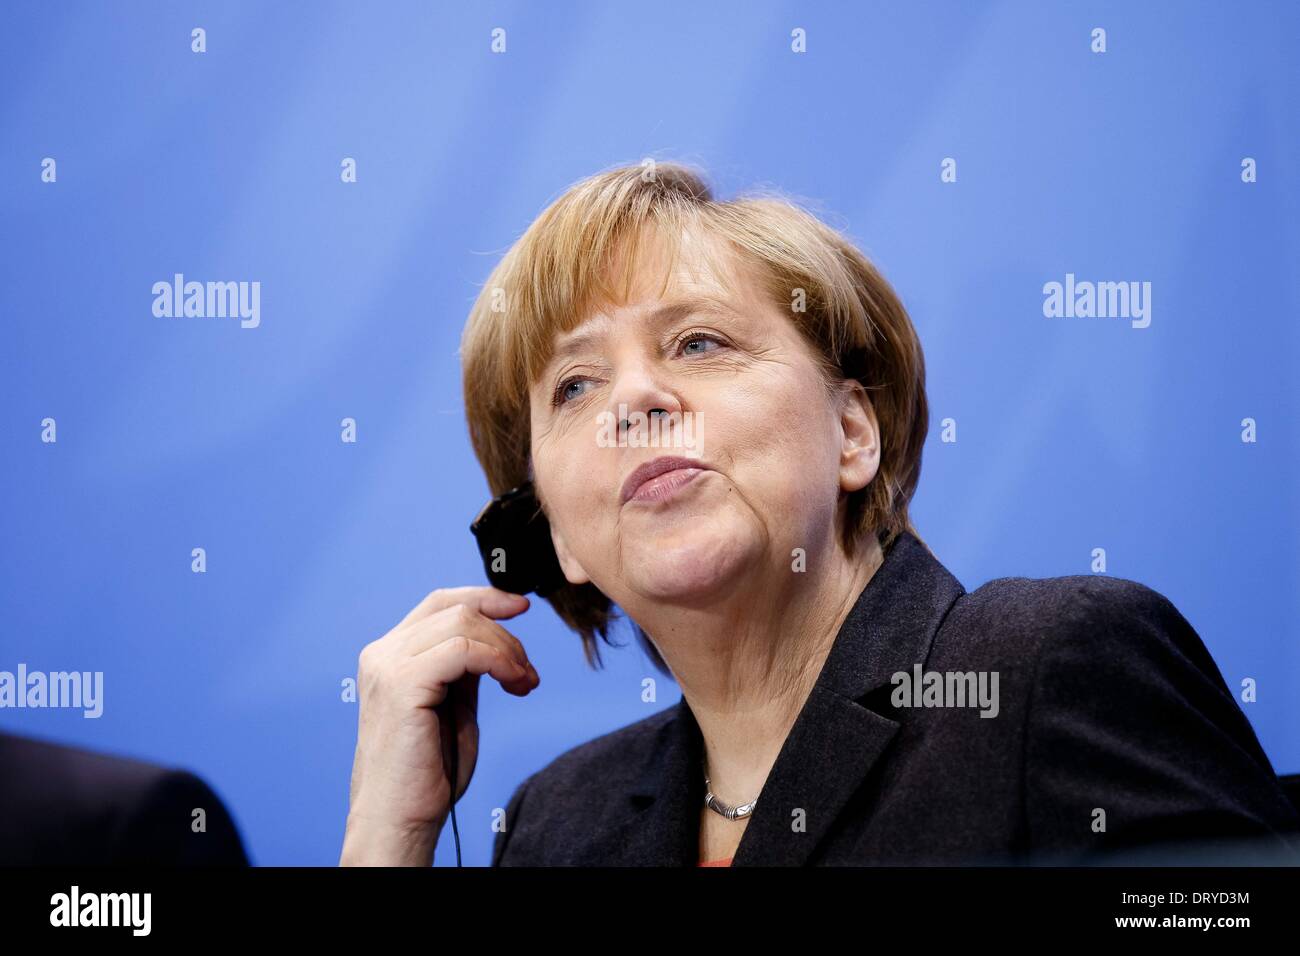 Berlín, Alemania. Februar 04th, 2014. La Canciller alemana Angela Merkel celebra el primer ministro turco, Recep Tayyip Erdogan, para intercambiar opiniones en la Cancillería Federal. El foco de la conversación común es el de las relaciones bilaterales y los actuales problemas internacionales, como Siria. Después de la reunión, les dan una conferencia de prensa conjunta en la Cancillería en Berlín. 4 Feb, 2014. / Foto: Angela Merkel (CDU), la Canciller alemana. © Reynaldo Paganelli/NurPhoto/ZUMAPRESS.com/Alamy Live News Foto de stock